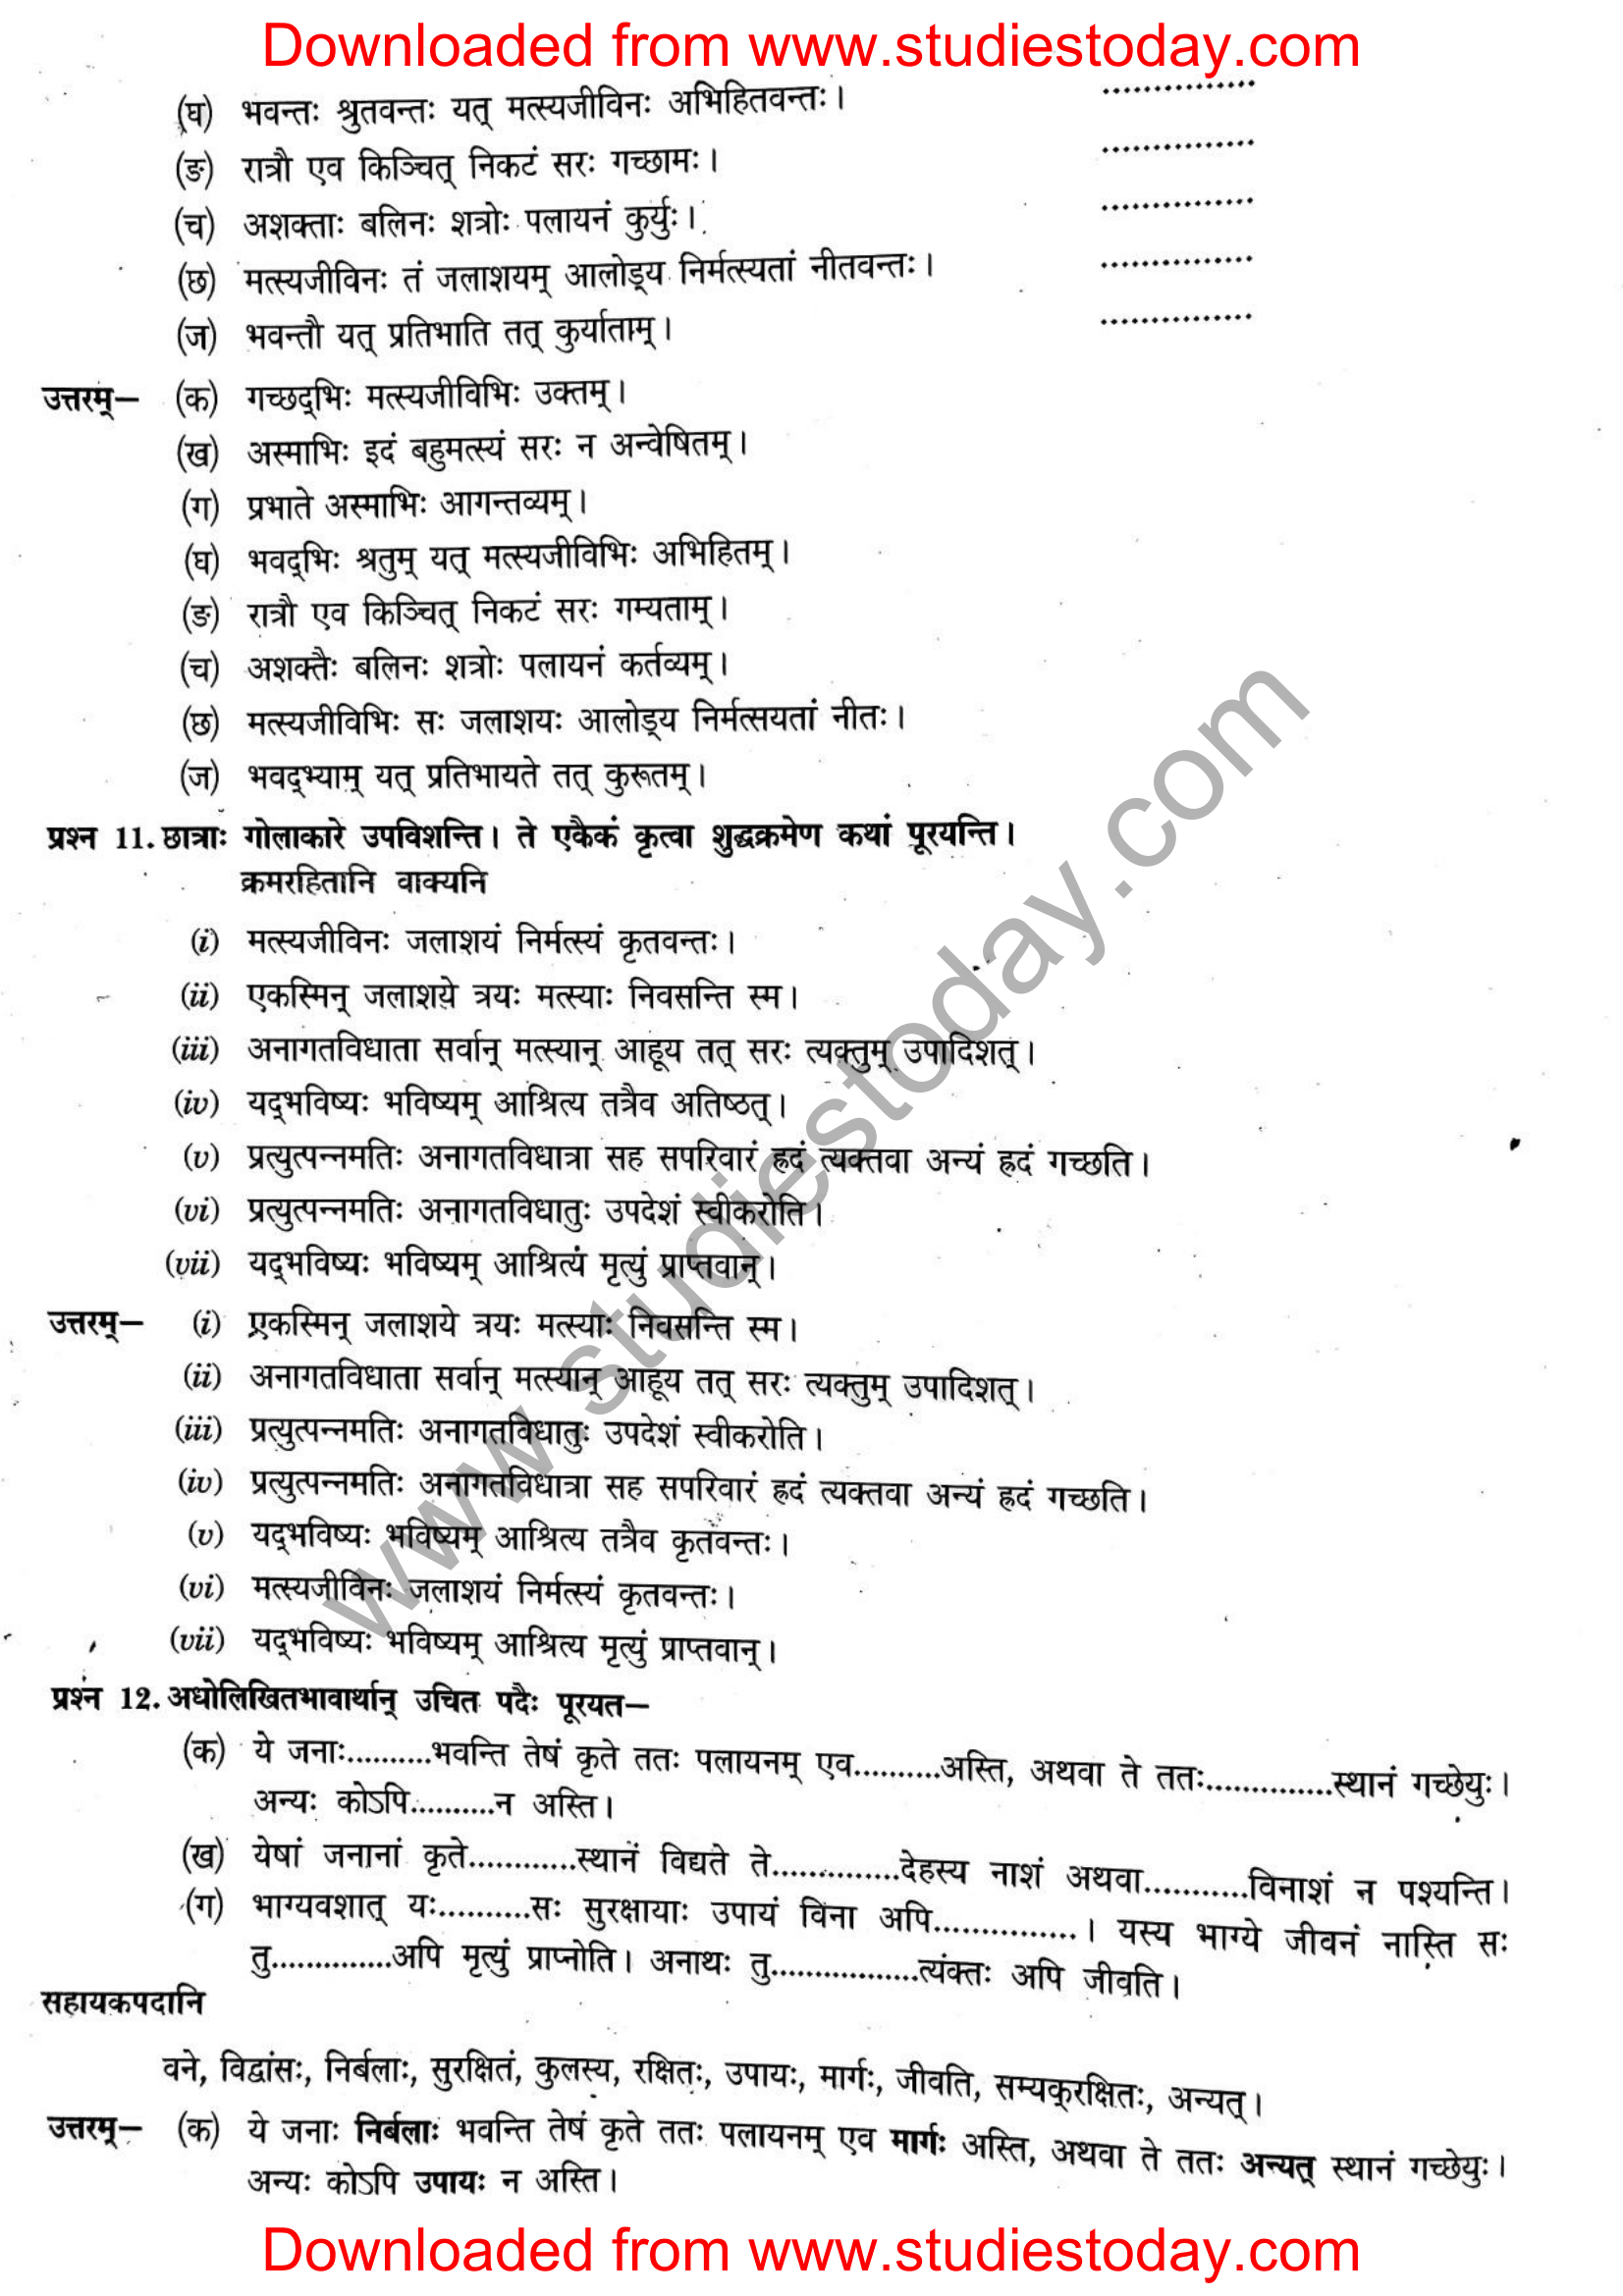 ncert-solutions-class-12-sanskrit-ritikia-chapter-4-10